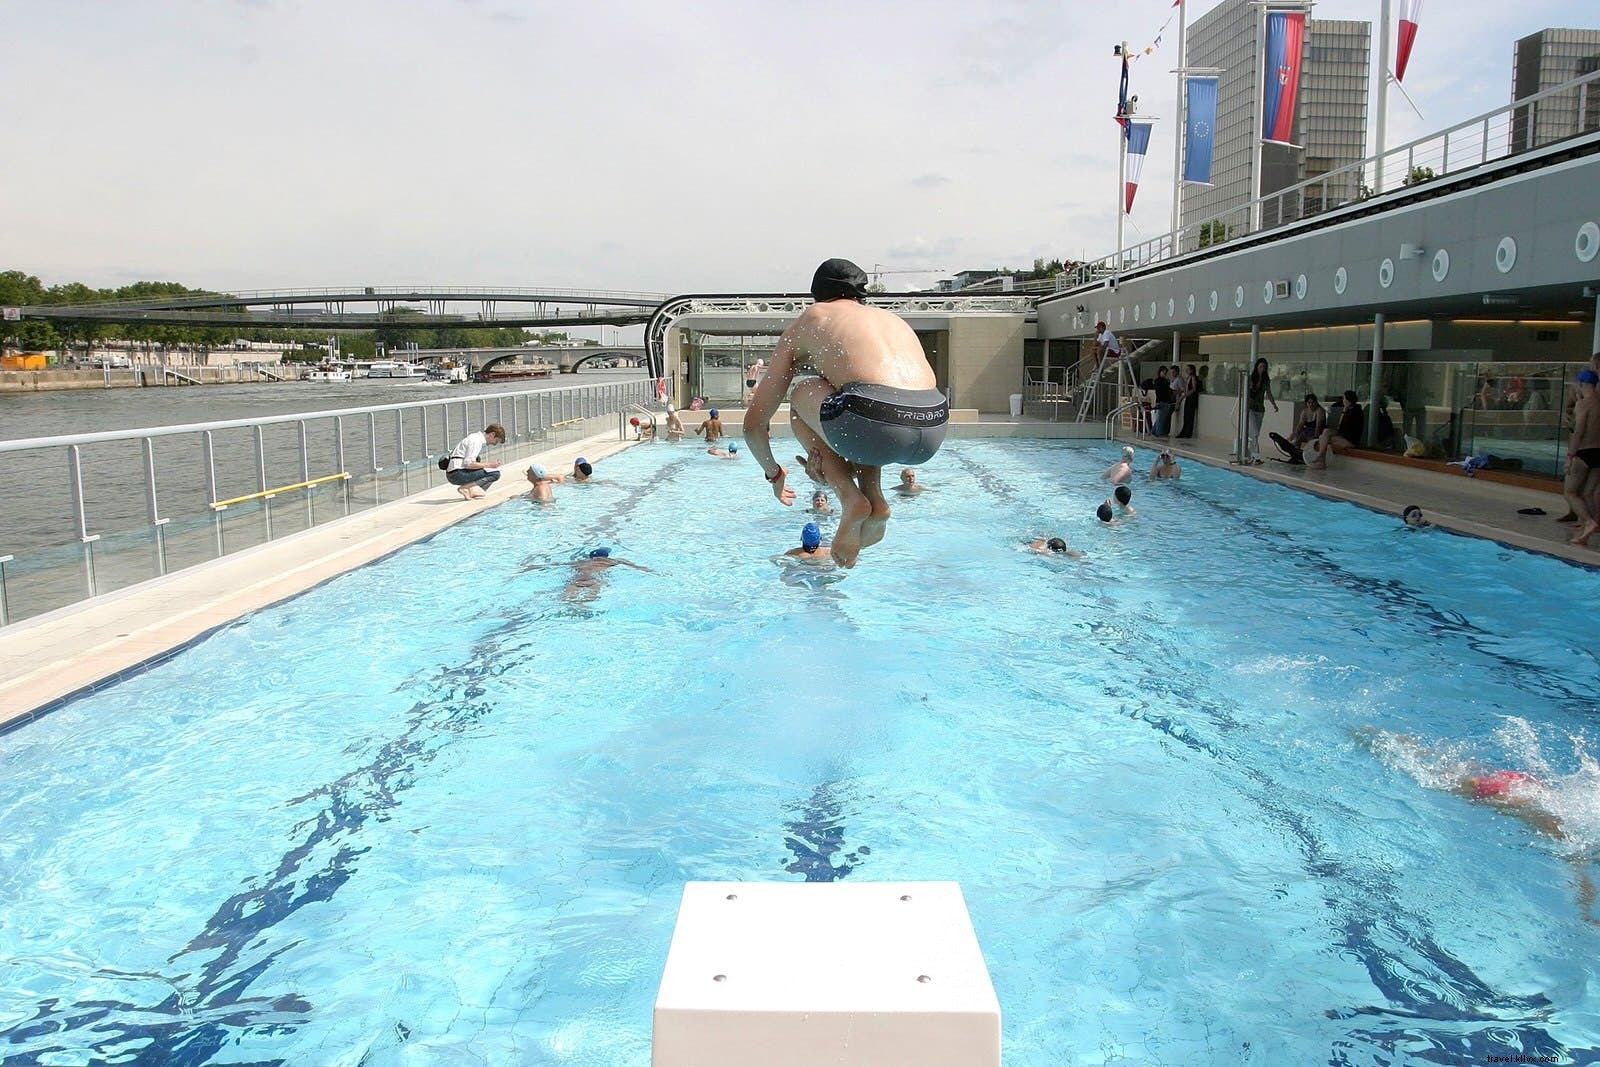 スプラッシュを作る：屋外の街の水泳に最適な場所 